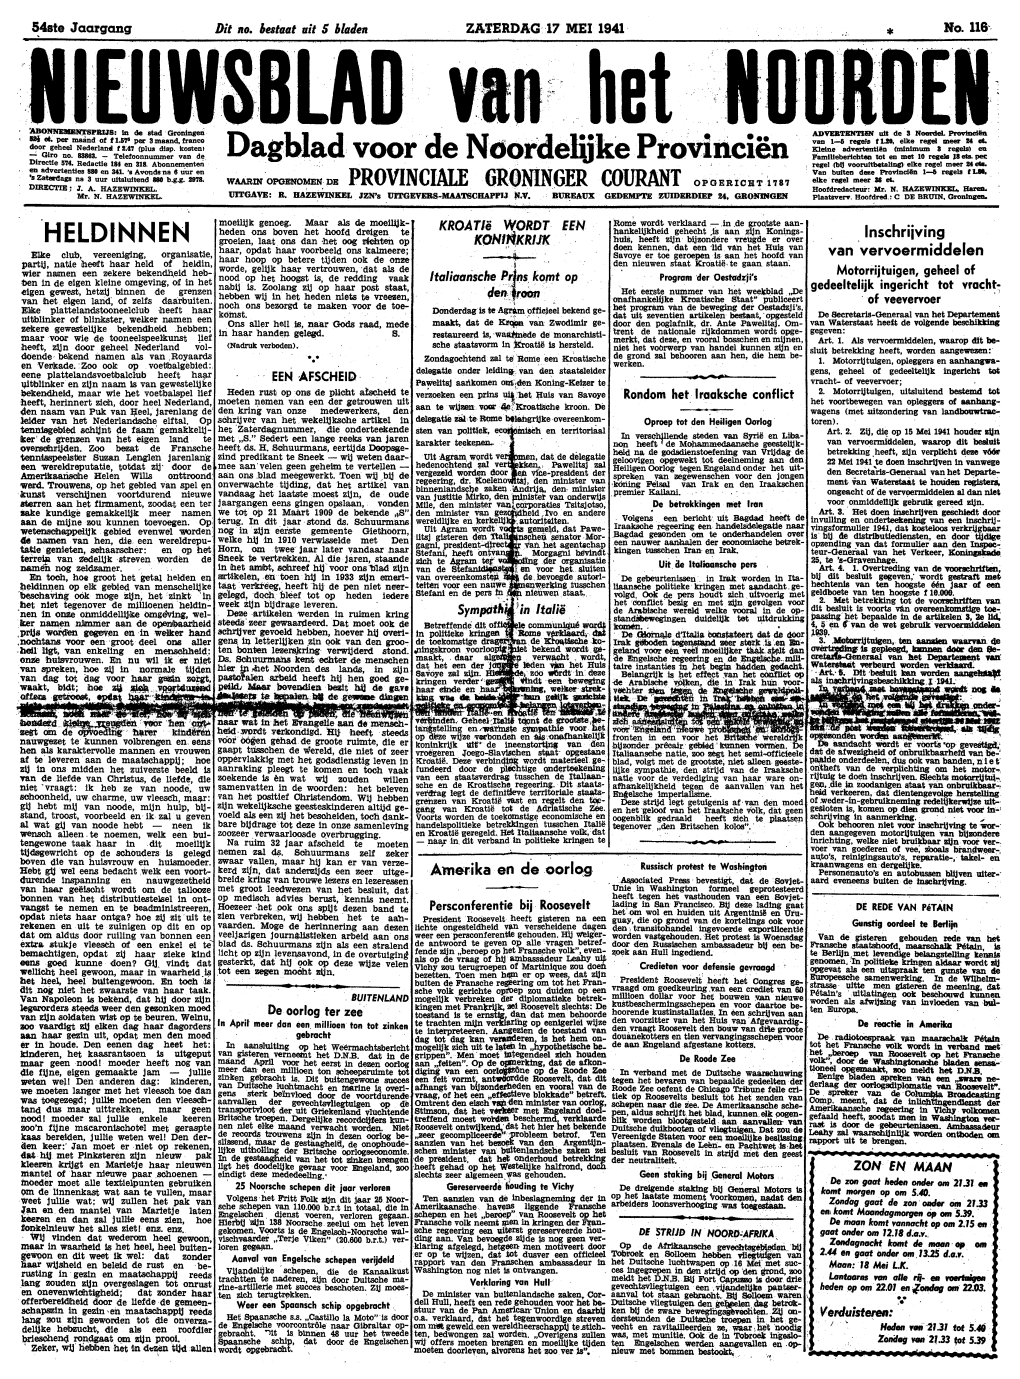 Nieuwsblad Van Het Noorden Van Zaterdag 17 Mei 1941 Eerste Blad De Aanvallen Op Engeland De St